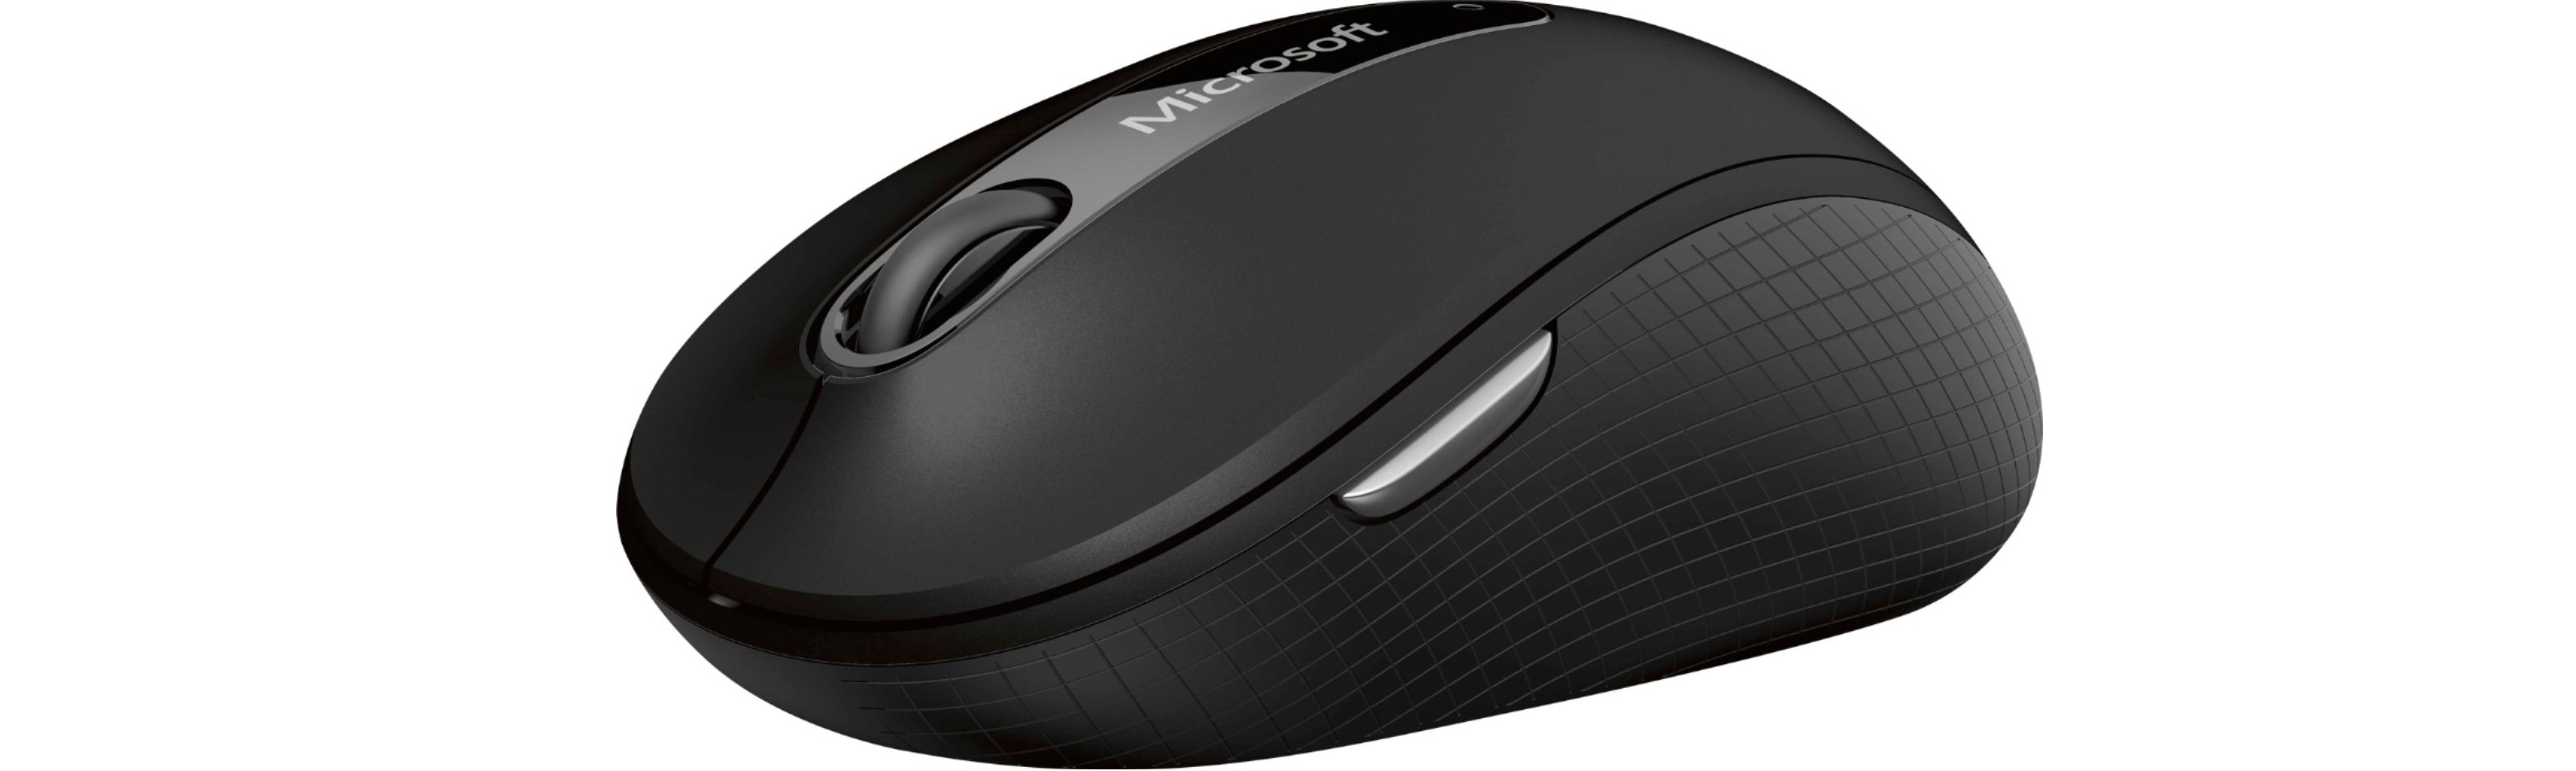 Chuột không dây Microsoft Wireless Mouse 4000 BlueTrack - D5D-00007 có tính năng cuộn 4 chiều